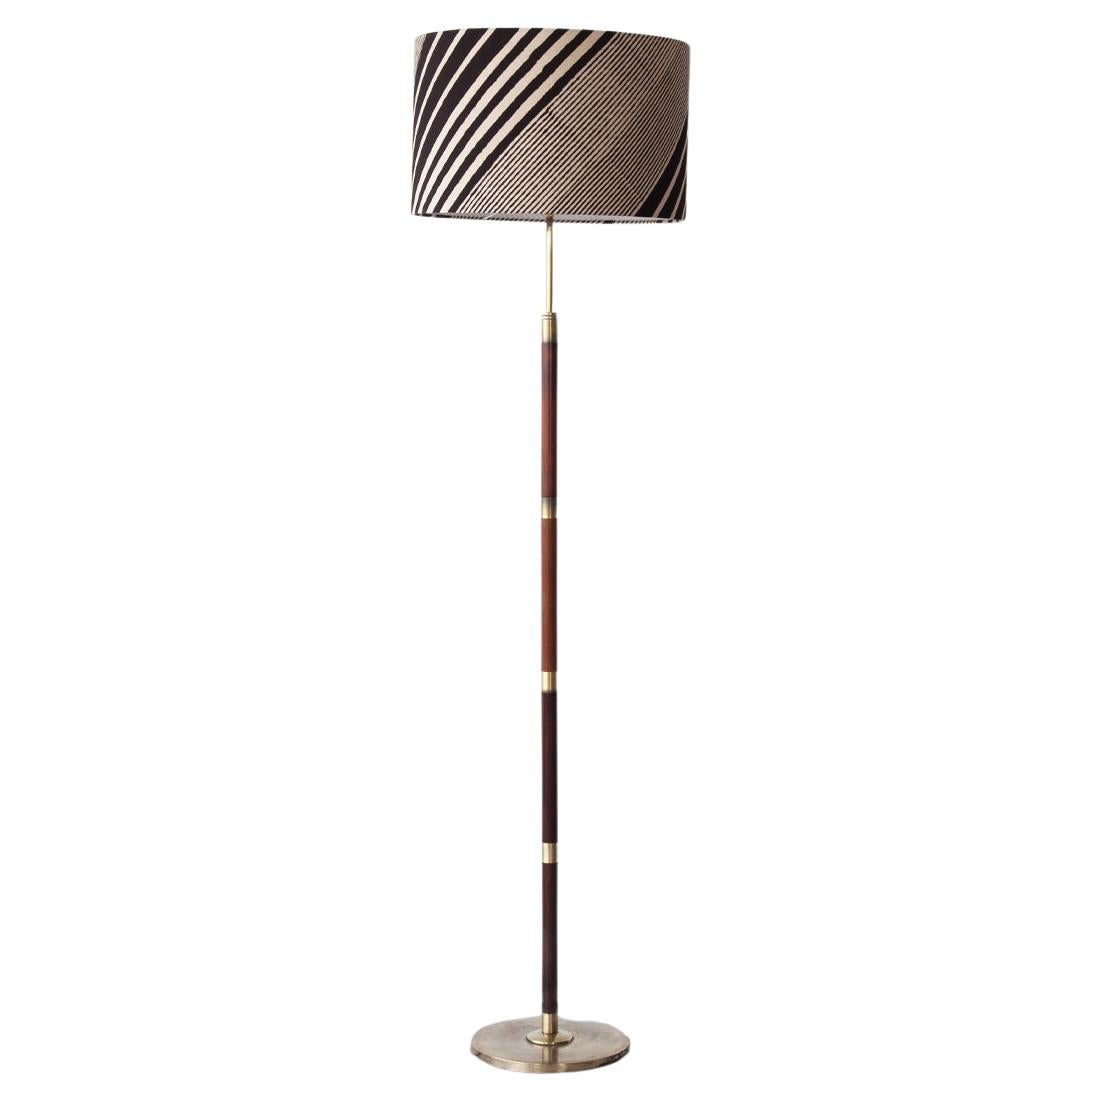 Elegant Mid 20th Century, Danish Floor Lamp